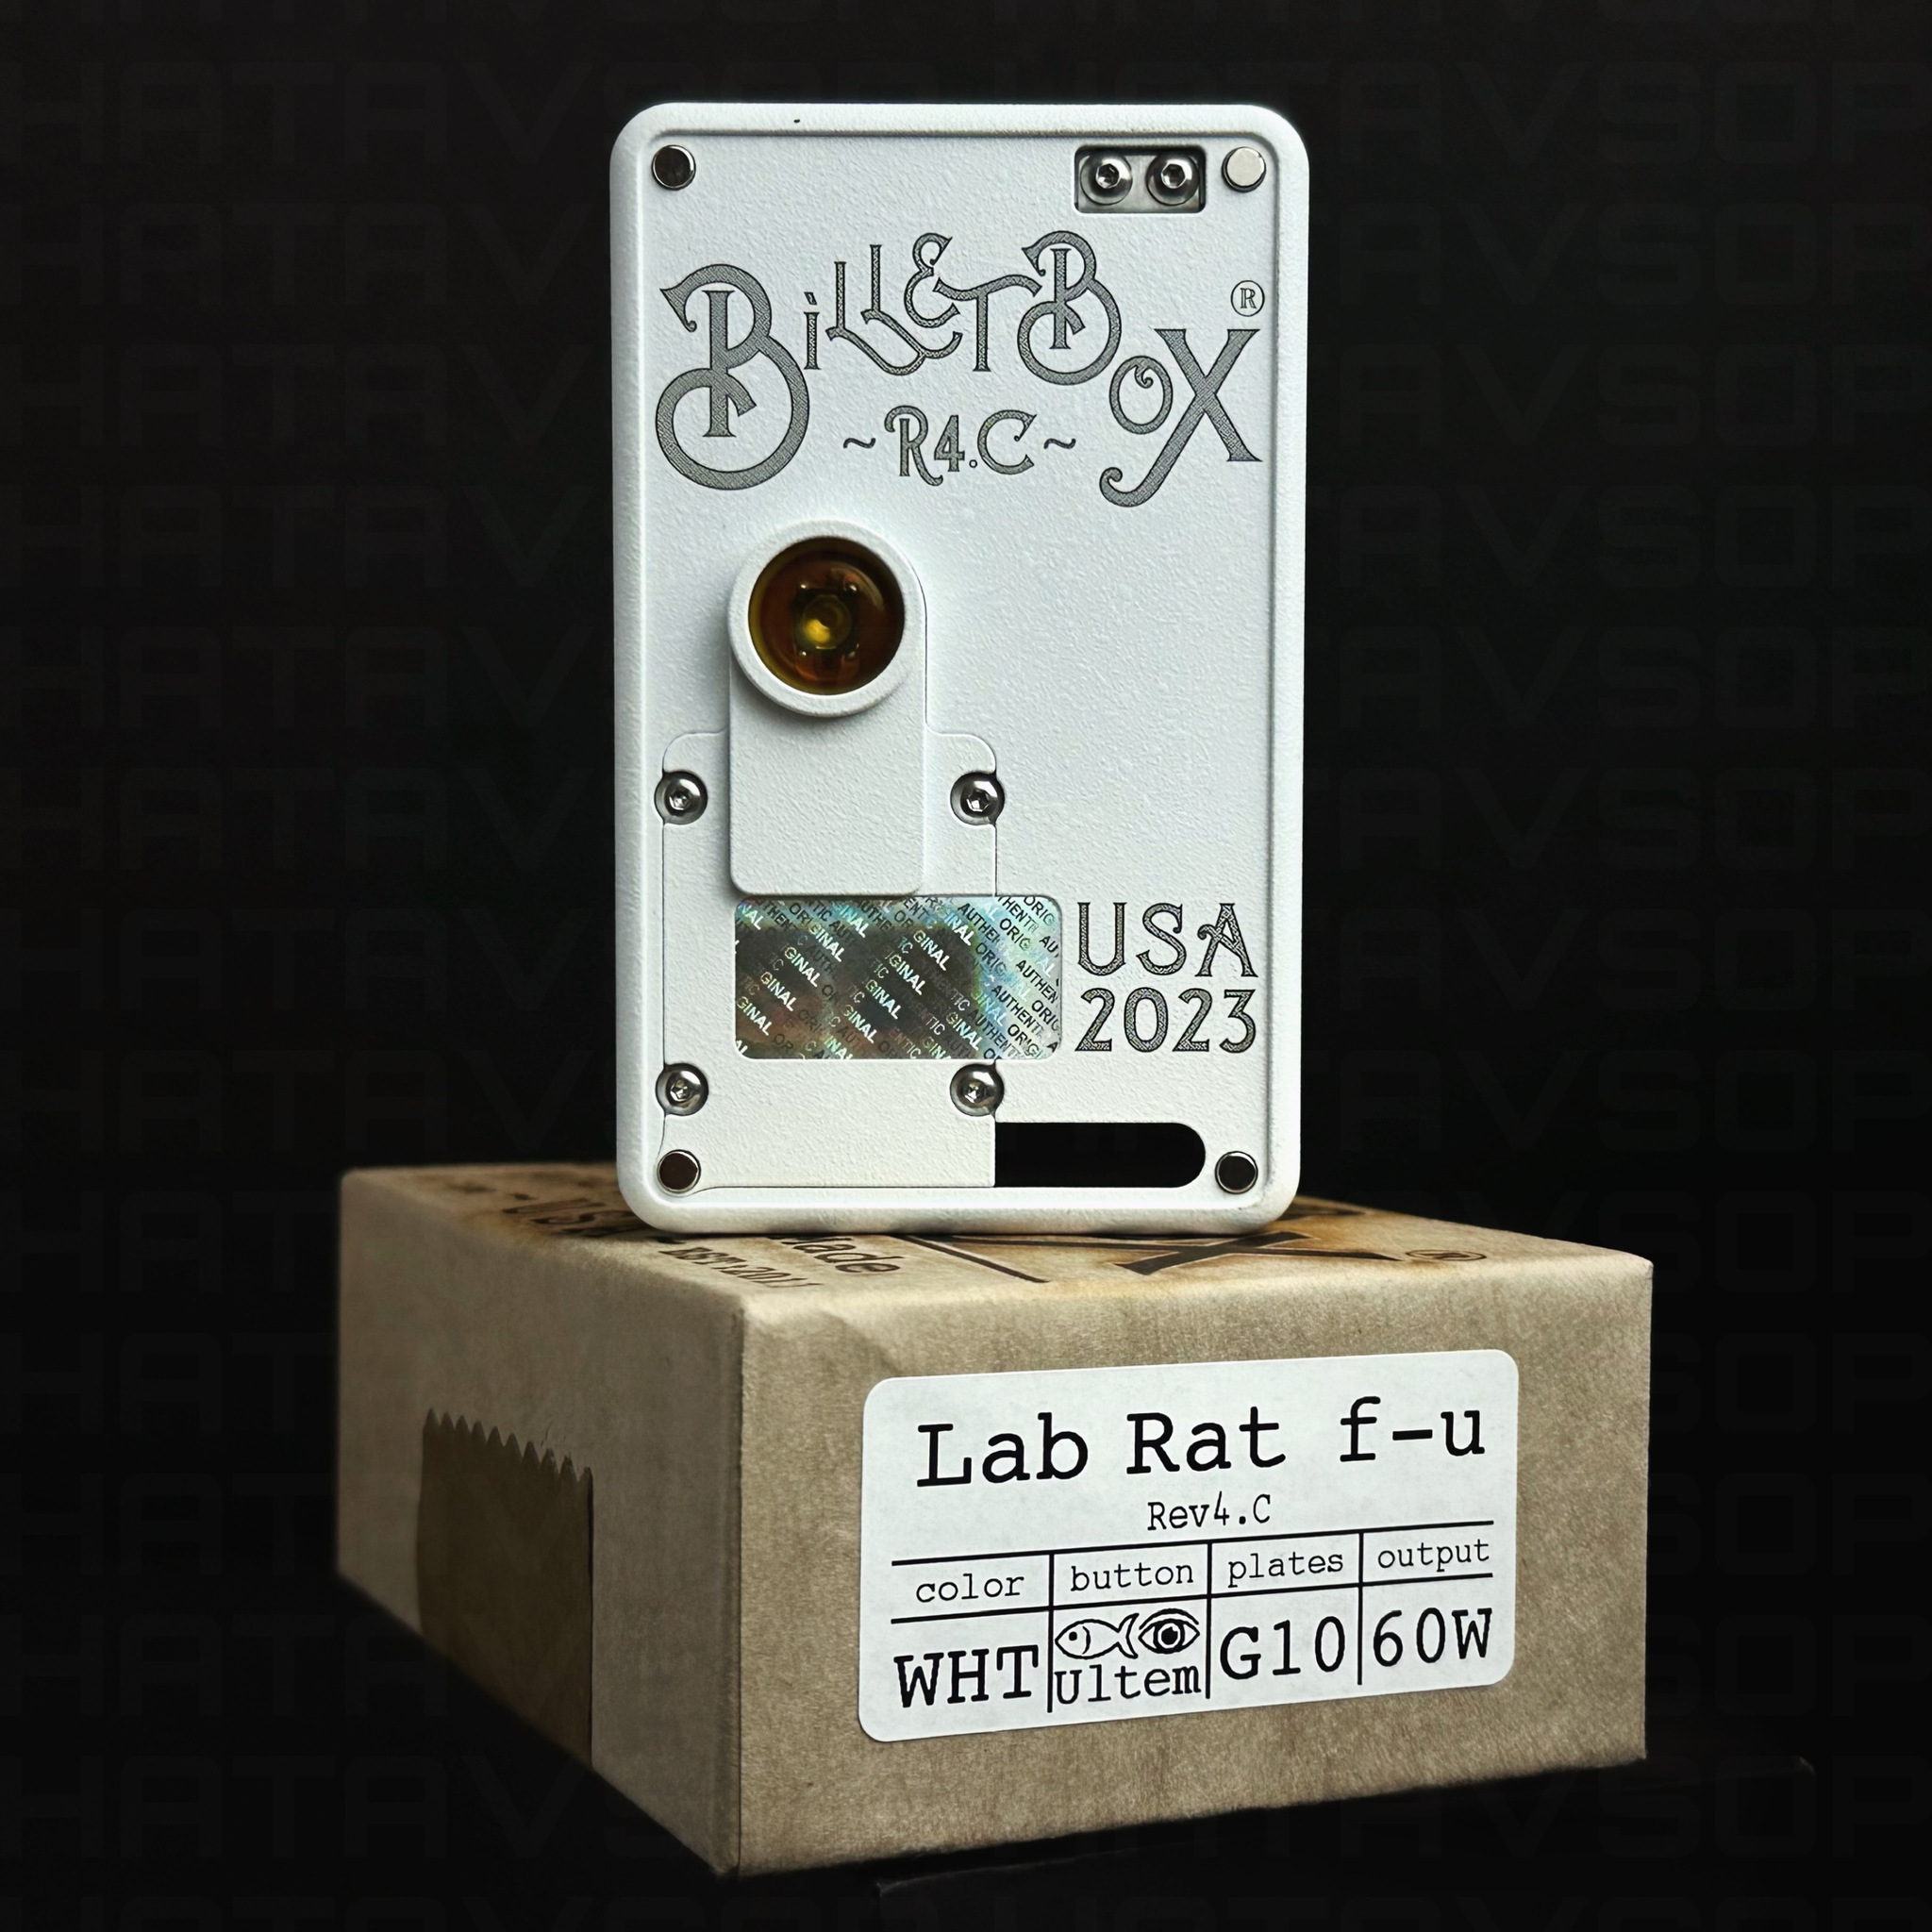 Billet Box Lab Rat f-u 2023 by Billet Box Vapor | HATA V.S.O.P.